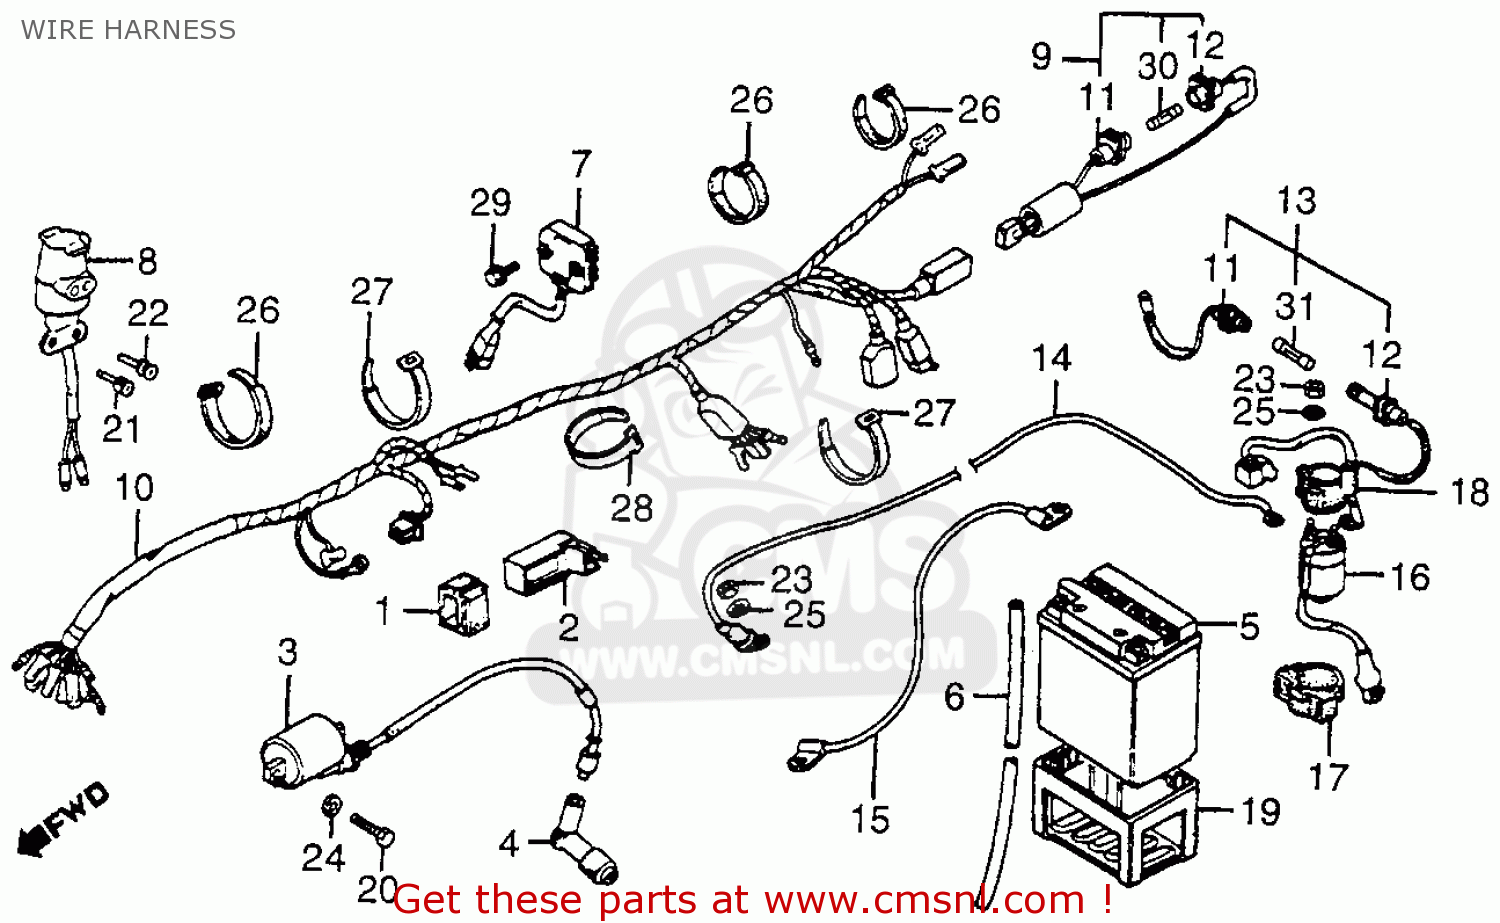 Wiring Diagram PDF: 185cc Atc Wiring Diagram